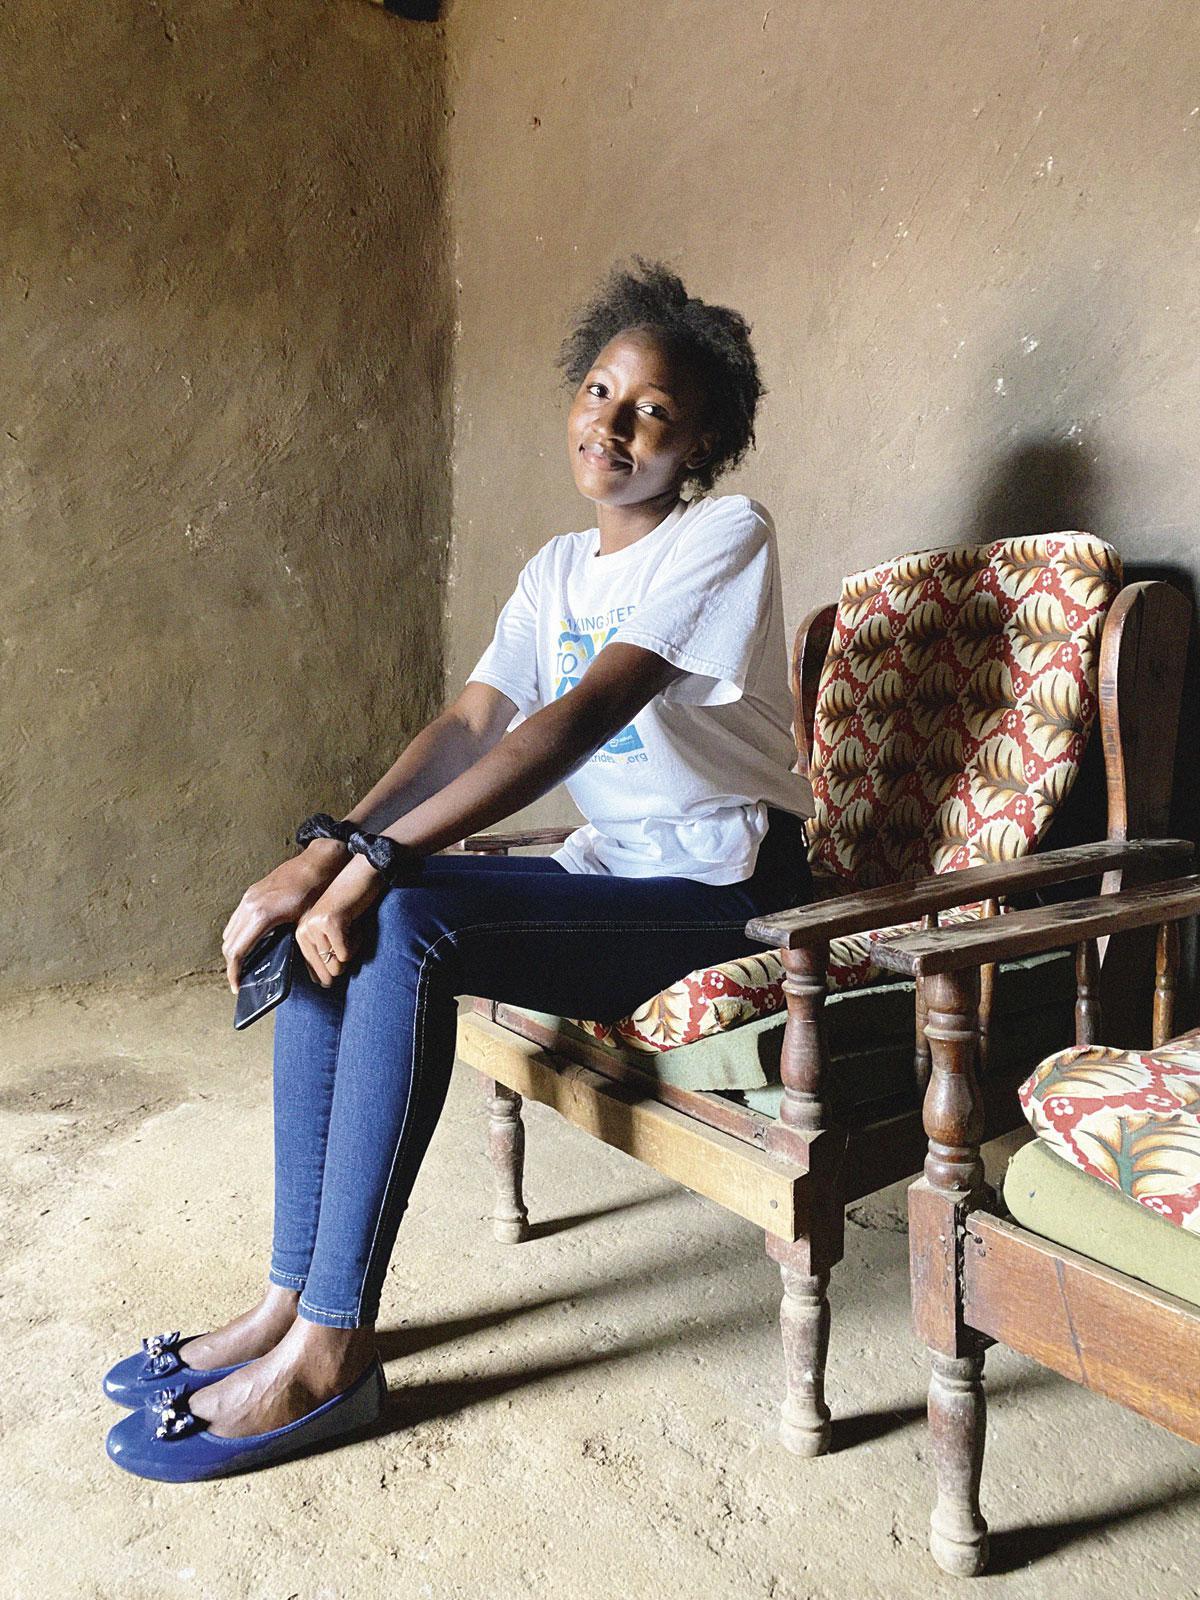 Leah was 11 toen ze de besnijdenisrituelen ontvluchtte. Nu is ze 21 en studeert ze aan de Universiteit van Nairobi.